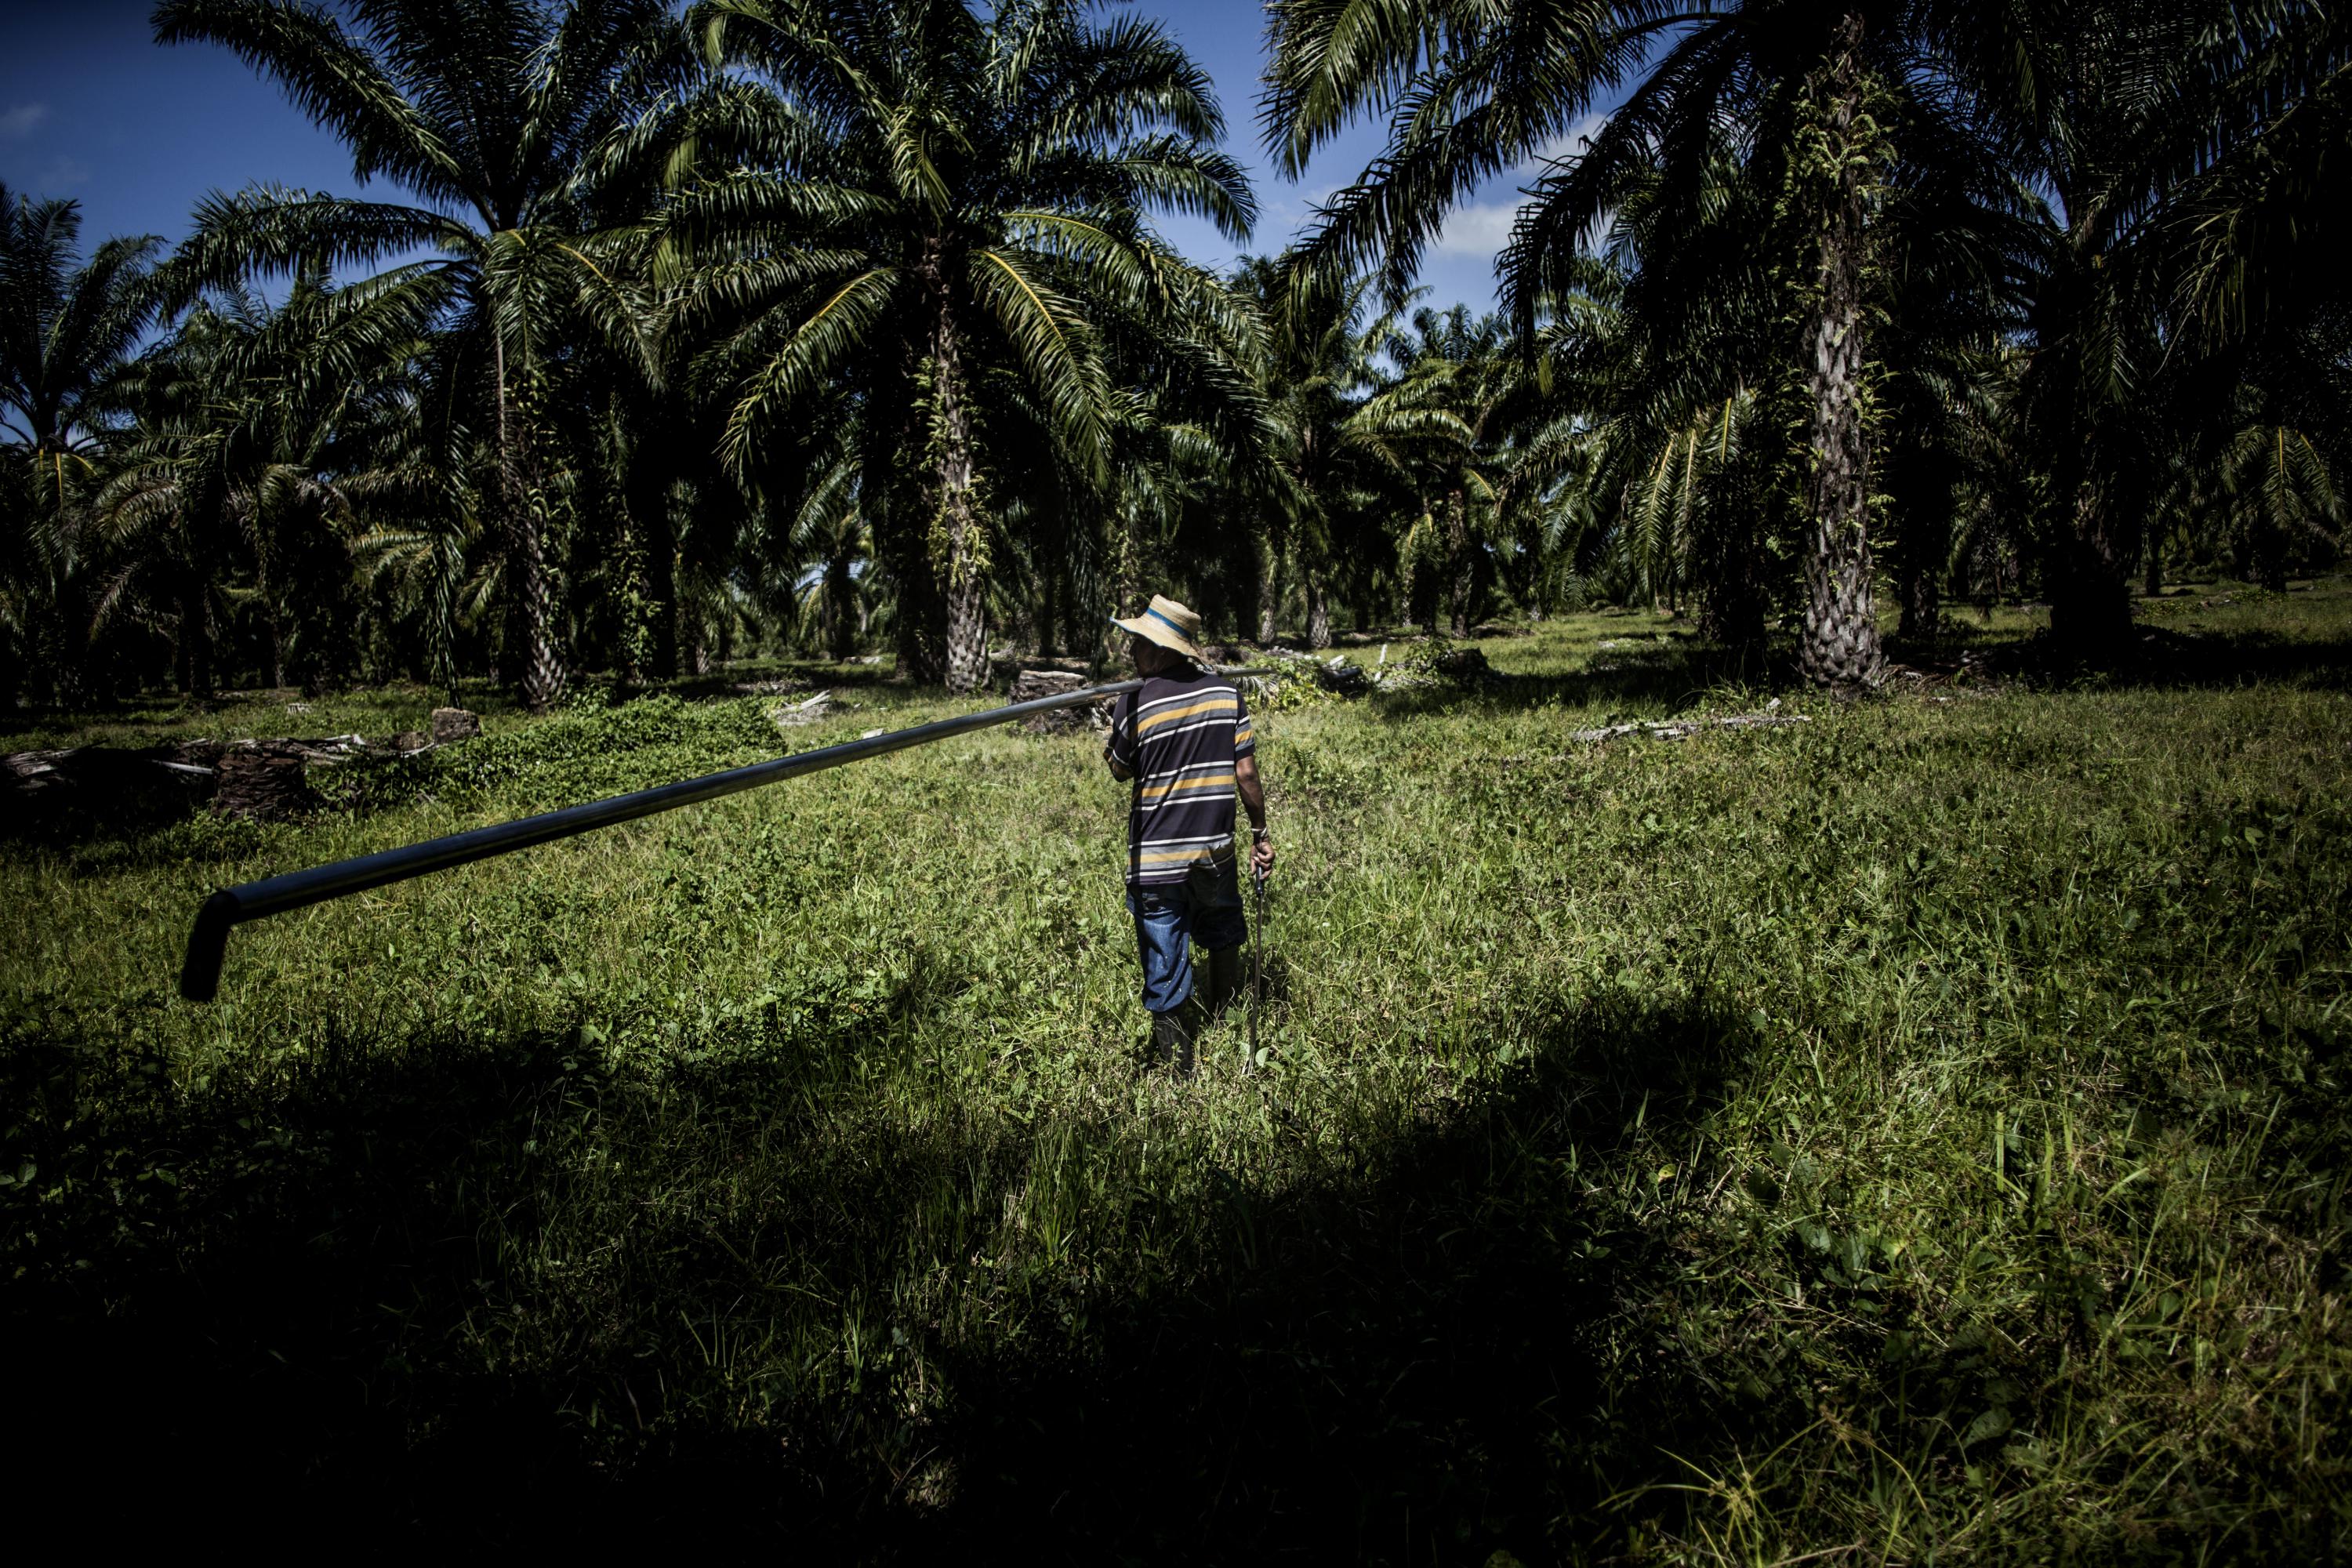 En los municipios de Tocoa y Trujillo, Honduras, las plantaciones de palma africana se convierten en un laberinto inexpugnable dentro del cual se libran batallas entre campesinos y guardias armados de los terratenientes. Foto de Manu Brabo tomada en el campamento del Movimiento Unificado de Campesinos del Aguán (MUCA). Agosto de 2011.